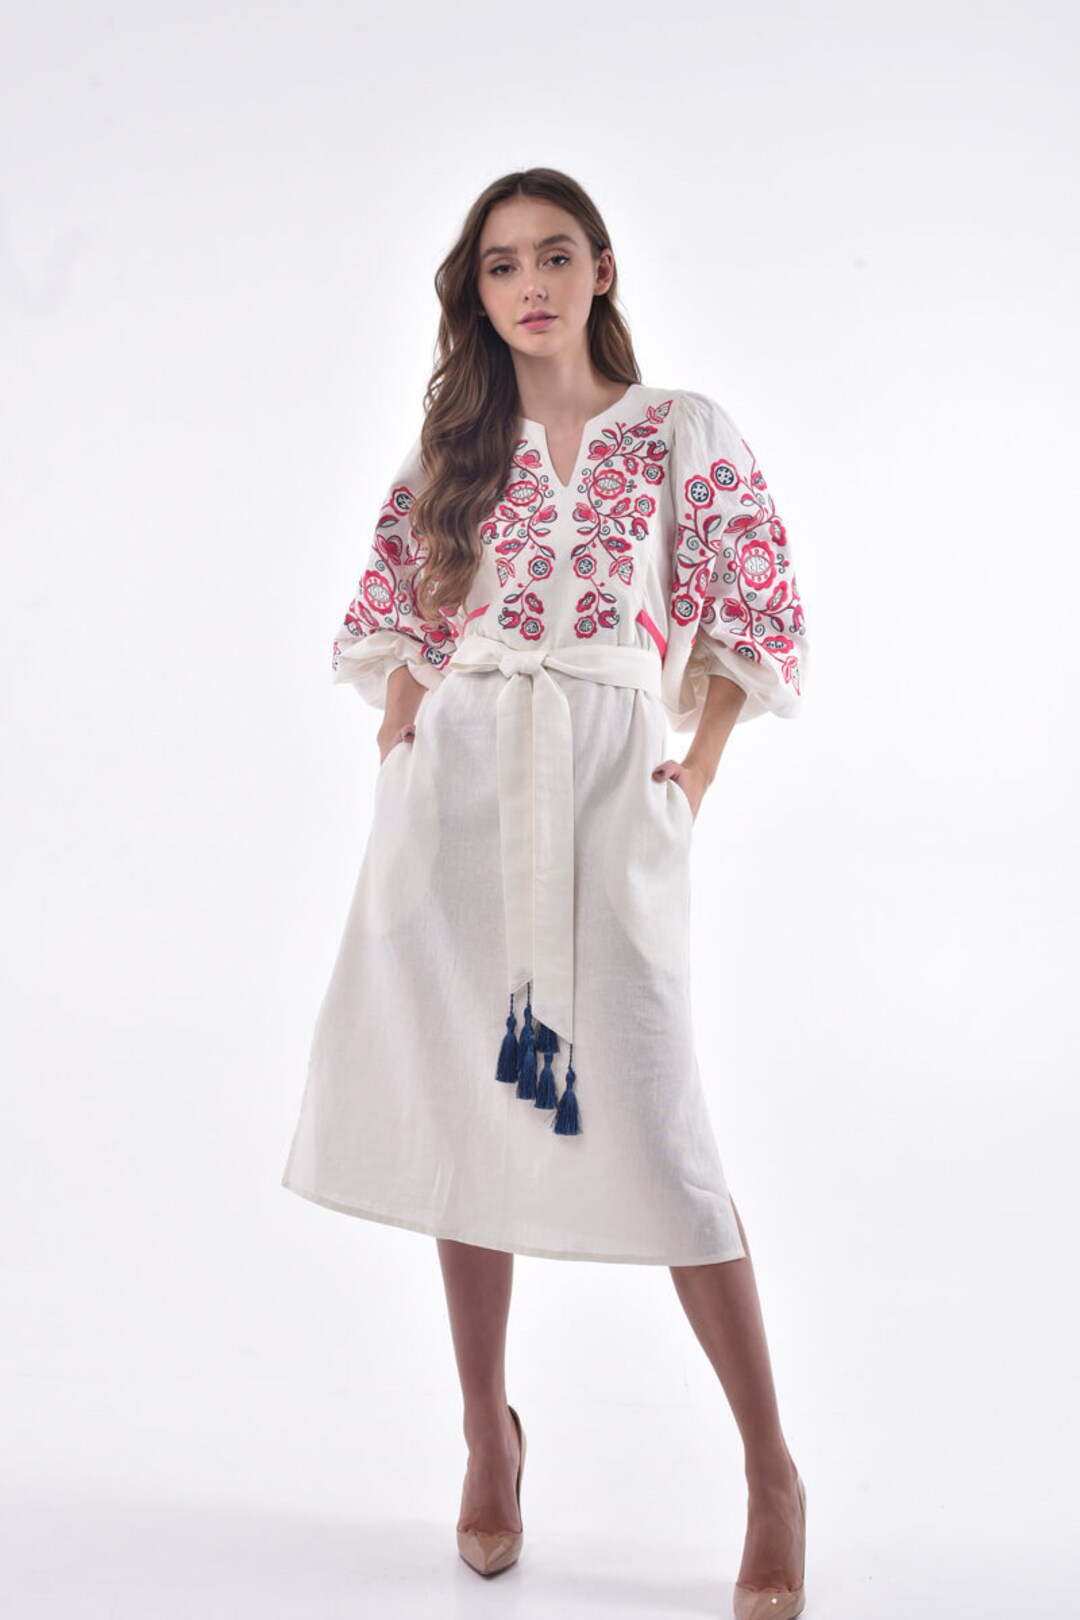 Embroidered Boho Dress Milky White for Women Ukrainian - Etsy